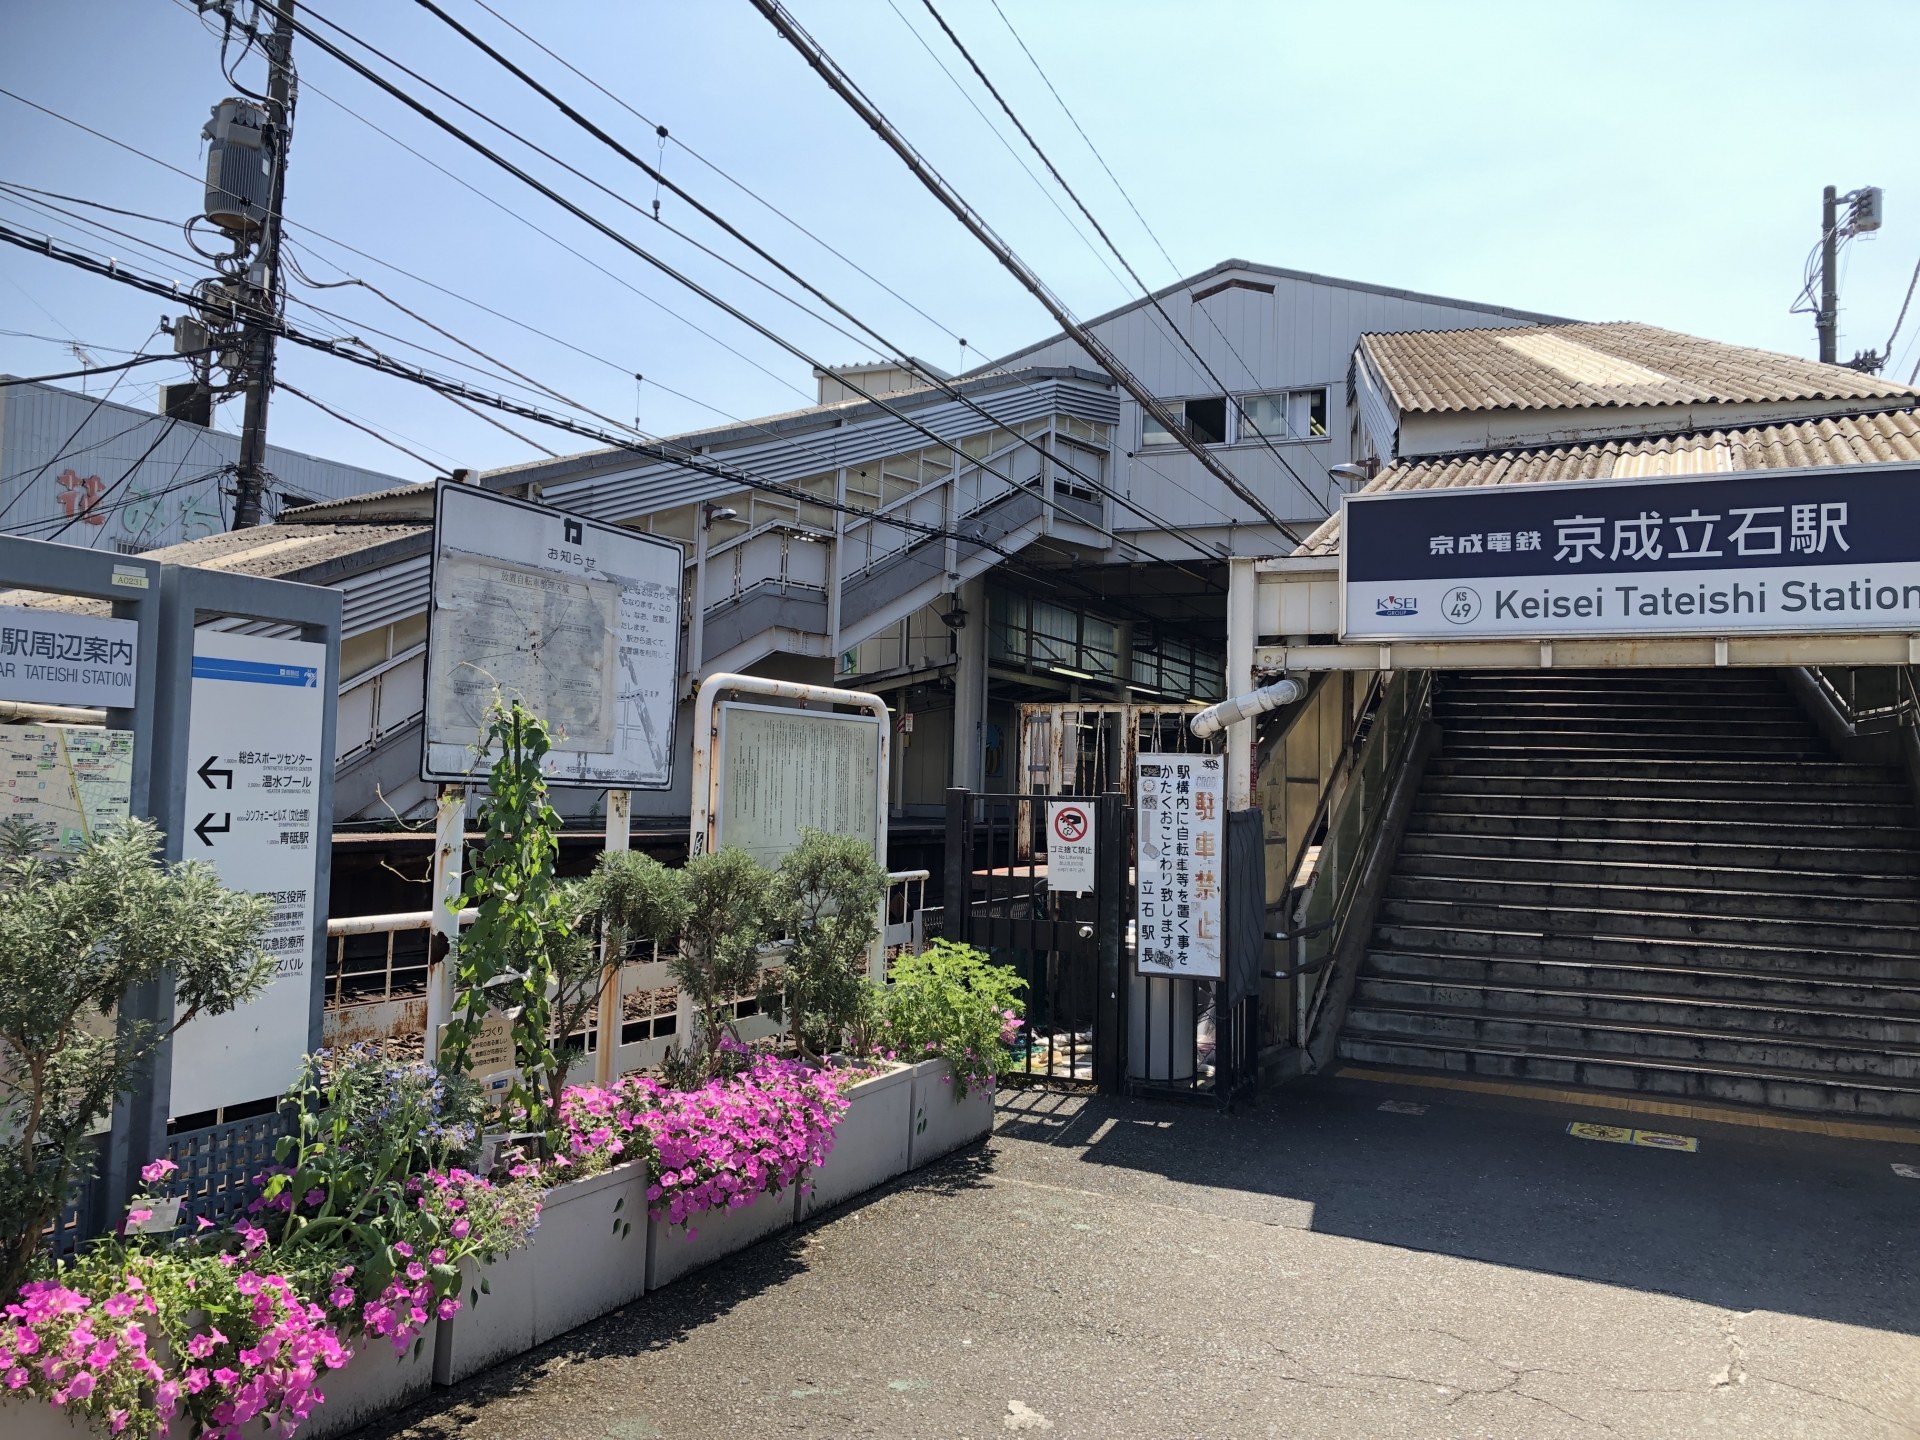 1912年に開業した京成立石駅（当時の駅名は立石駅）。利用者は増えていて、2022年度の1日平均乗降数は約3.2万人。京成線全69駅中12番目、押上線の単独駅および京成電鉄の普通停車駅では最も多い。